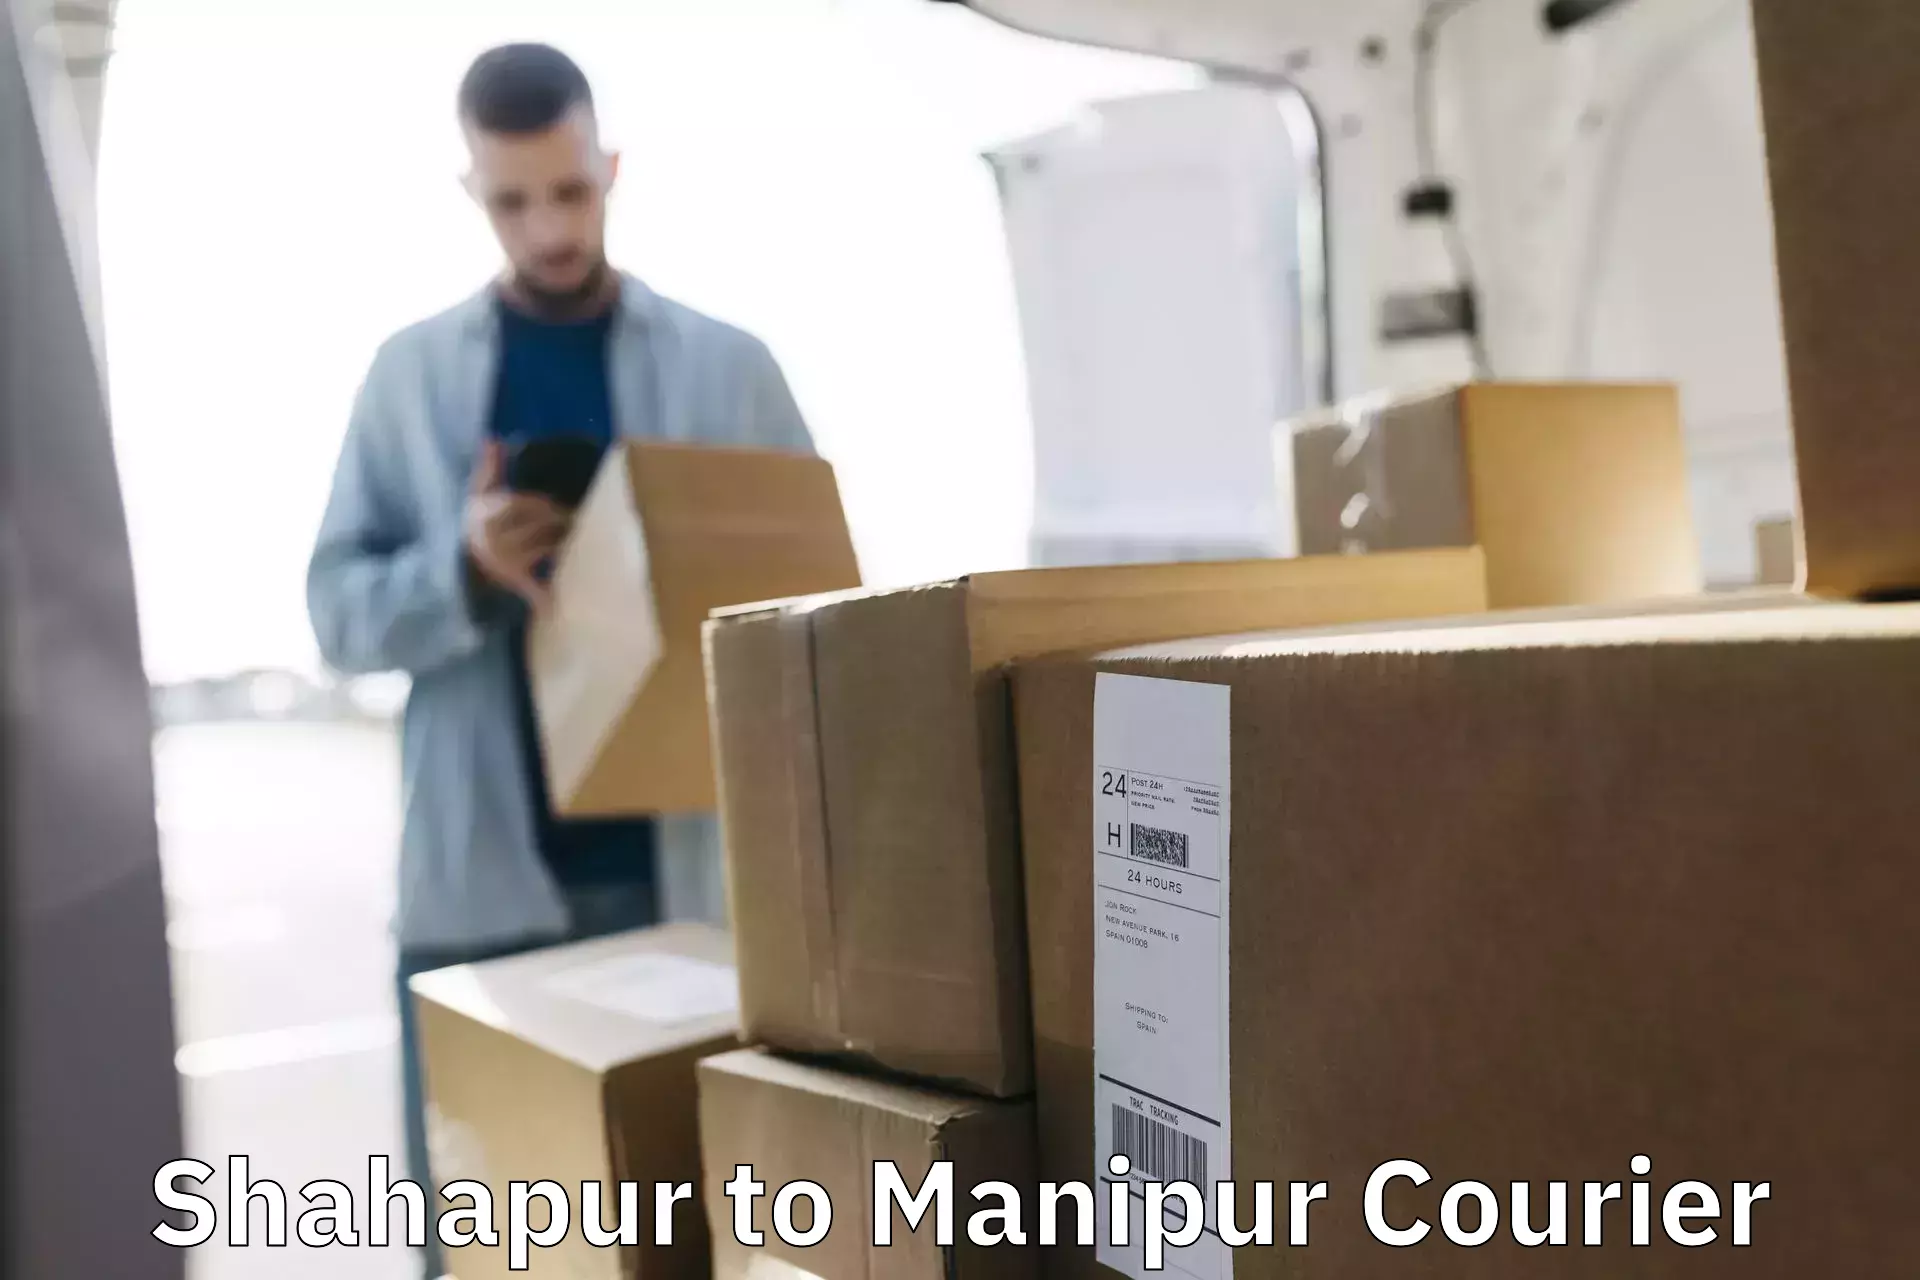 Professional courier handling Shahapur to Churachandpur